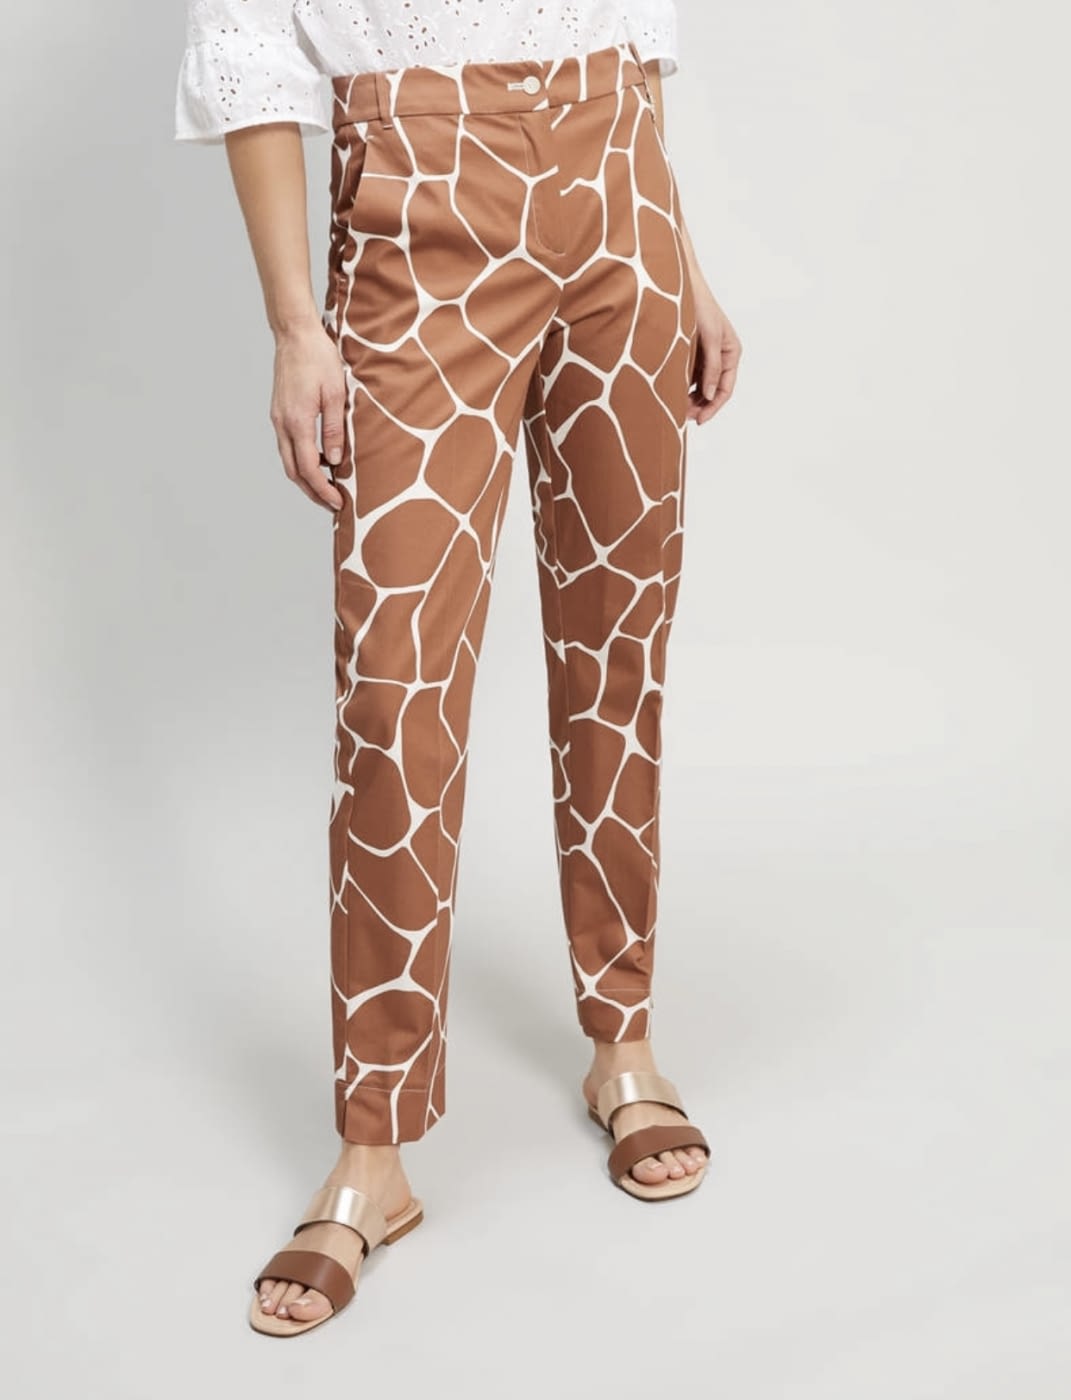 PENNYBLACK pantalón estampado girafa